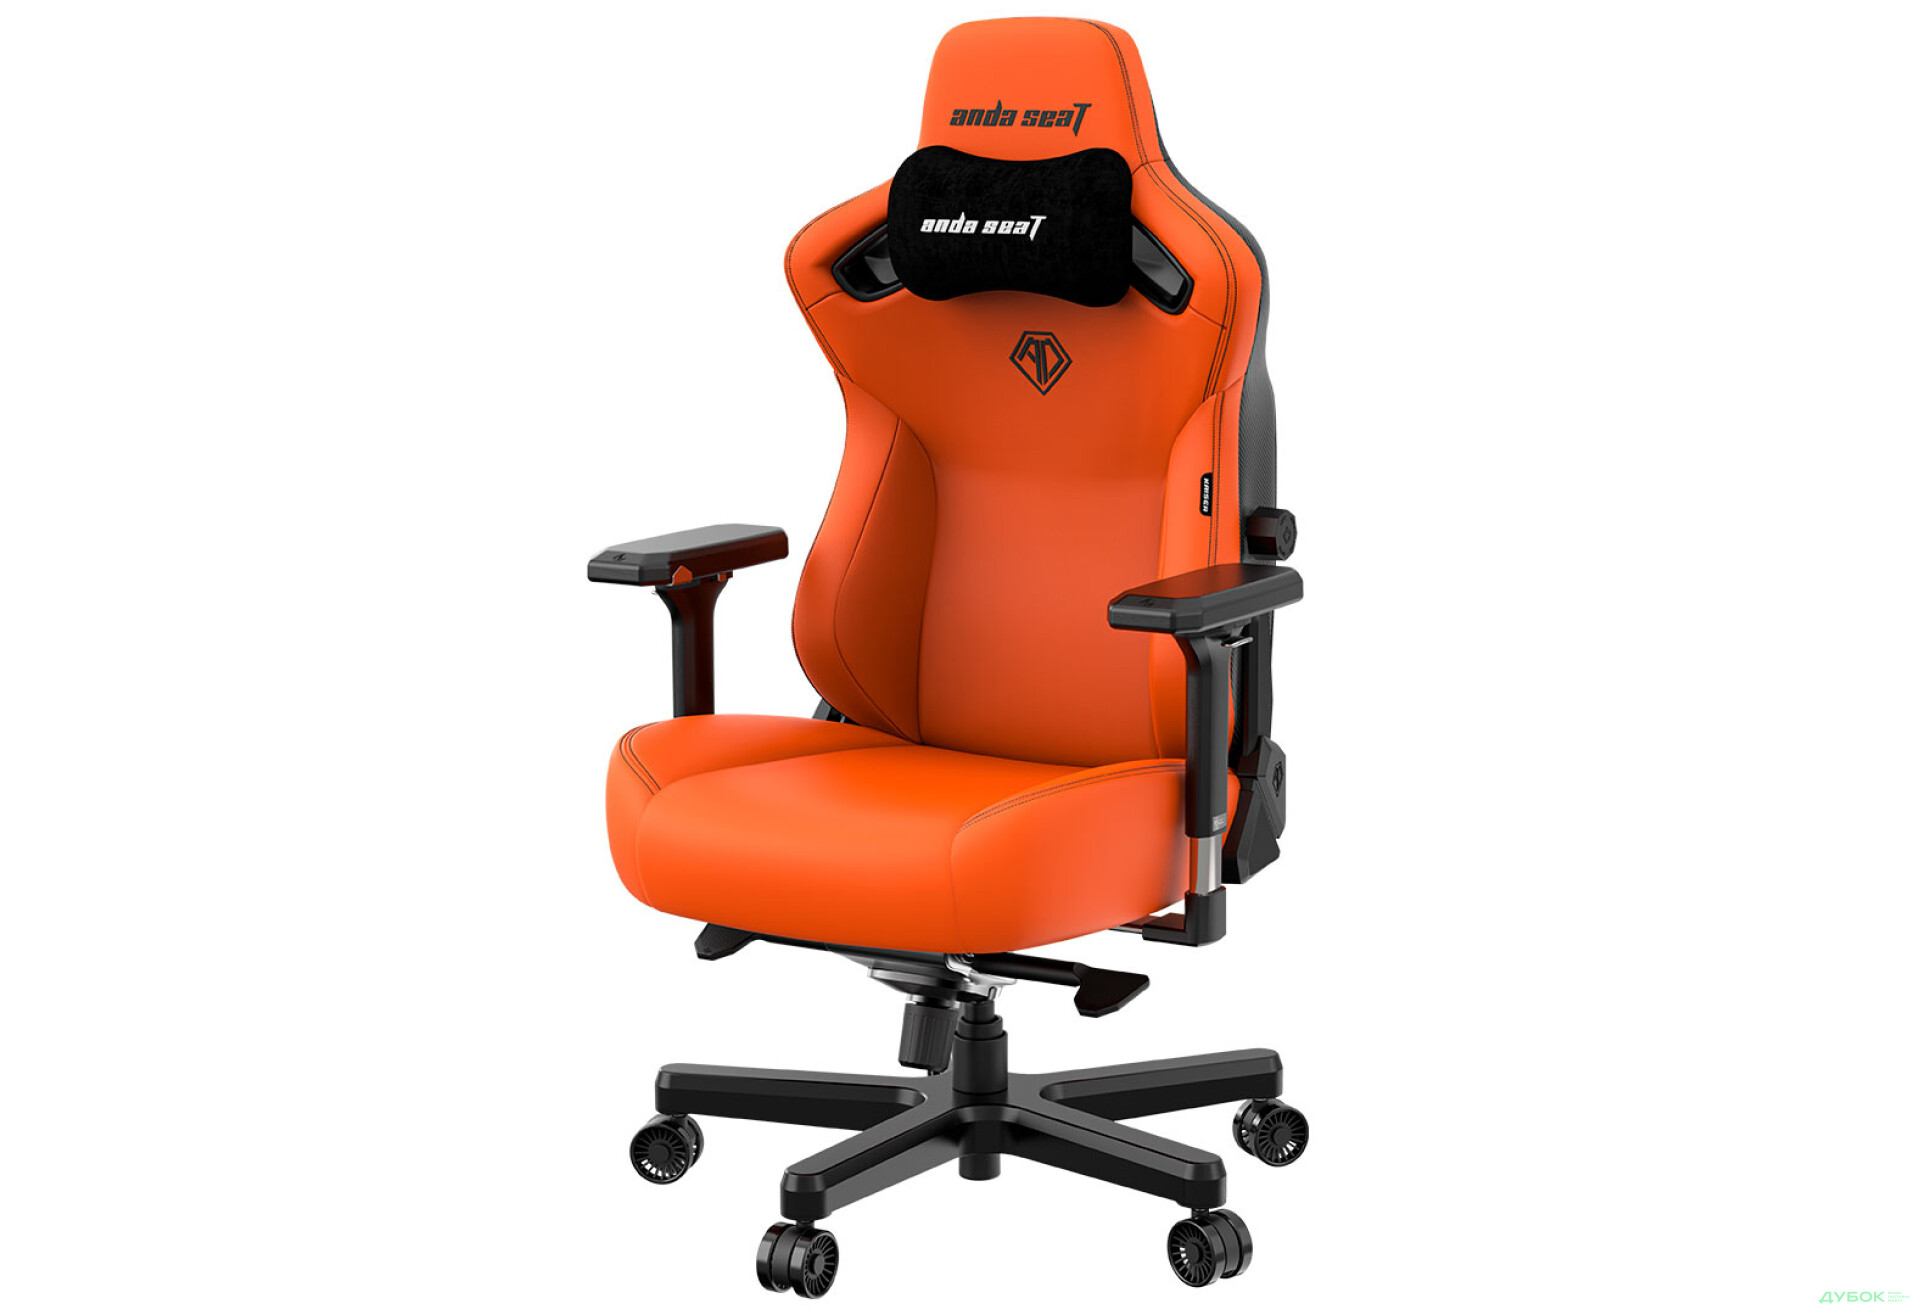 Фото 4 - Компьютерное кресло Anda Seat Kaiser 3 72x57x136 см игровое, оранжевое